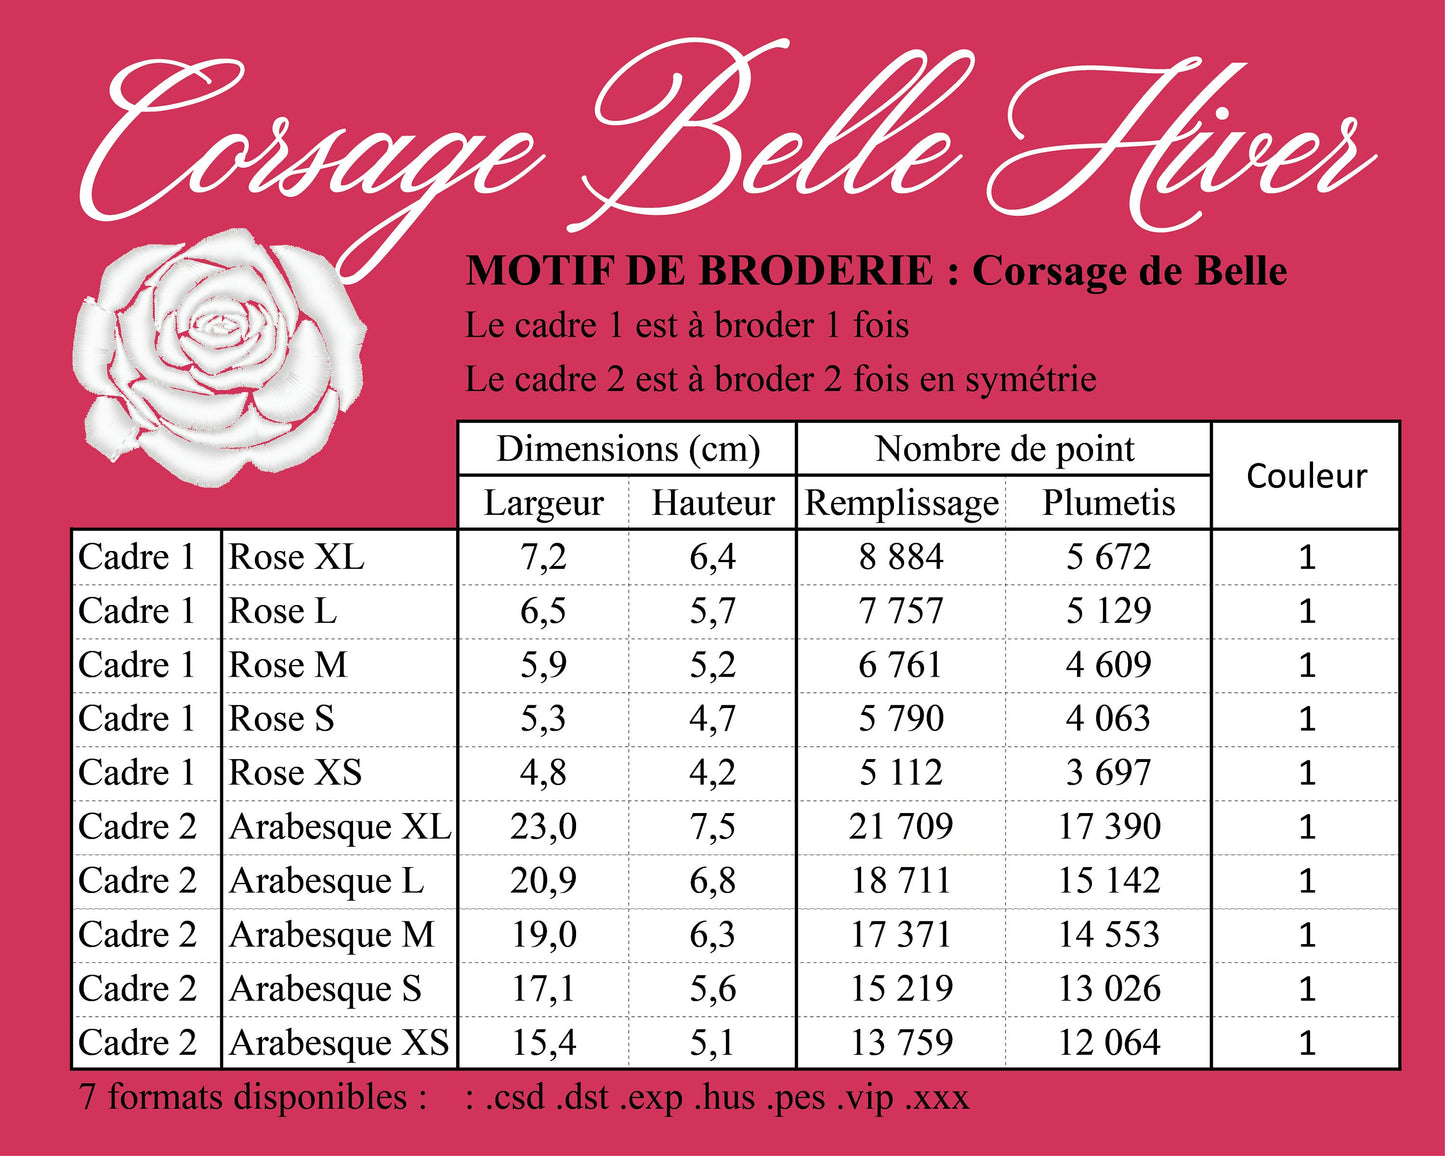 Winter Belle's bodice embroidery machine design - Motif de broderie du corsage de Belle Hiver